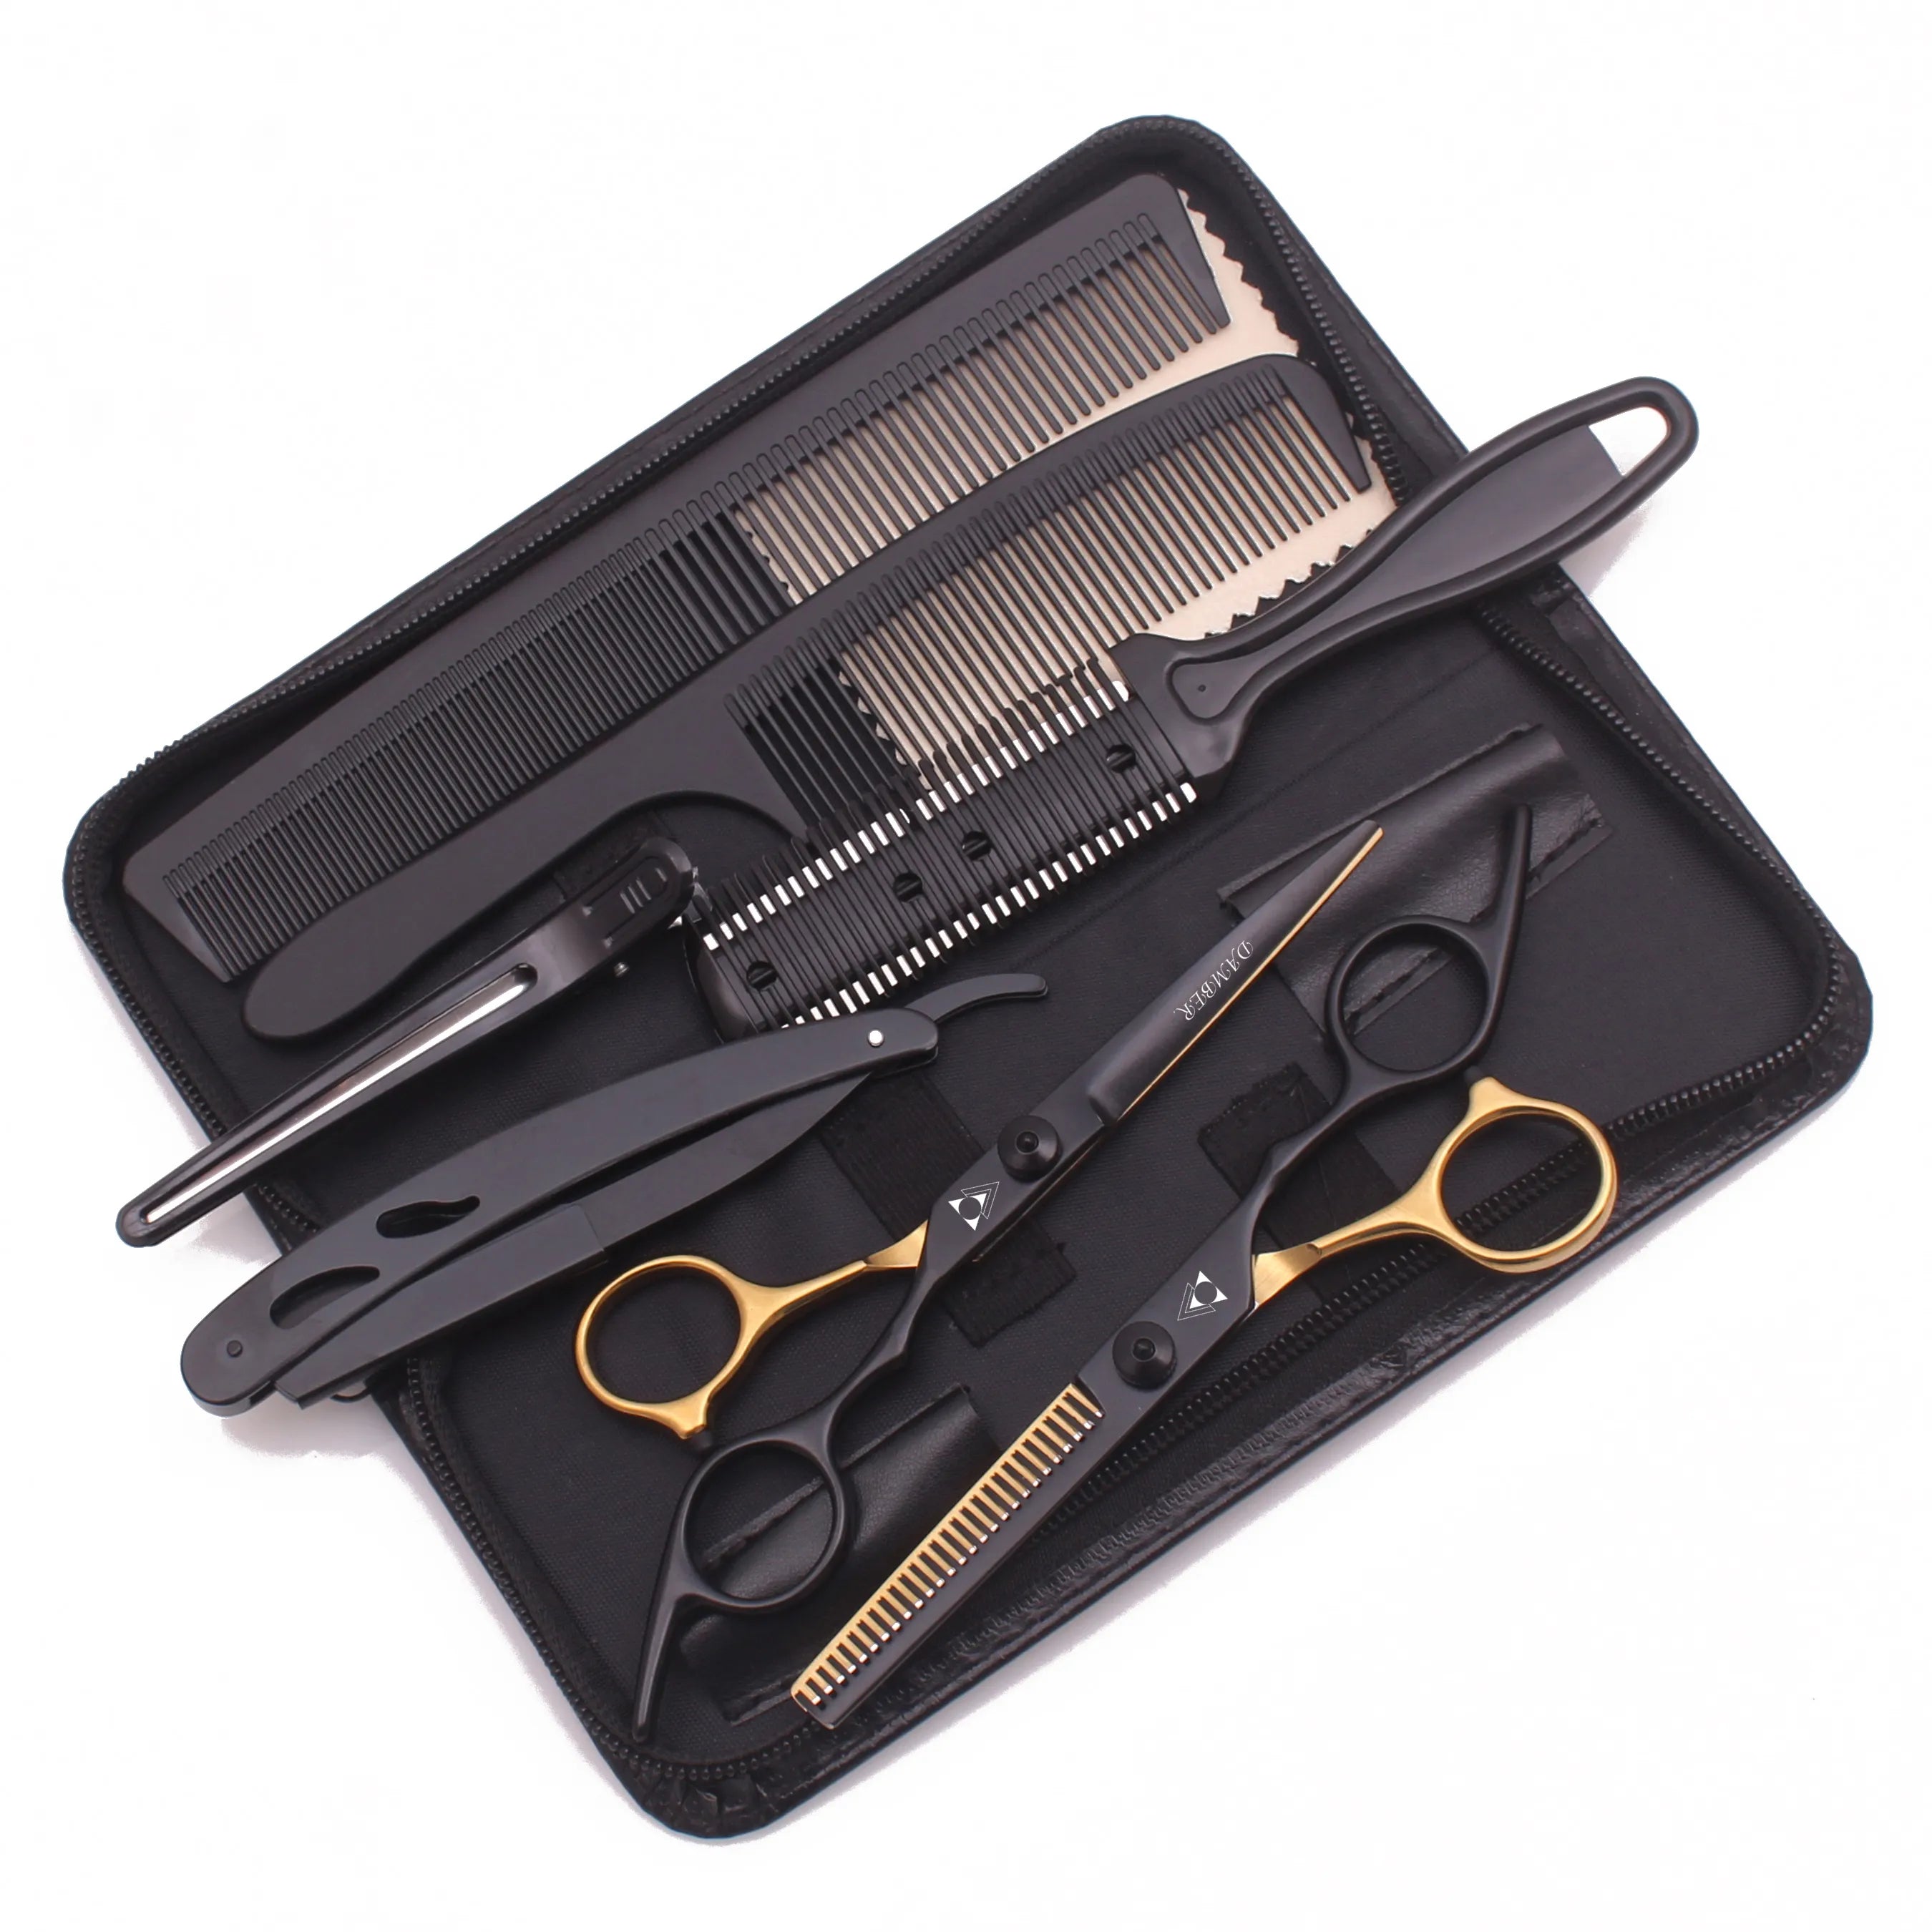 Hairdresser's Essential Scissors Set - Japanese Stainless Steel Bliss